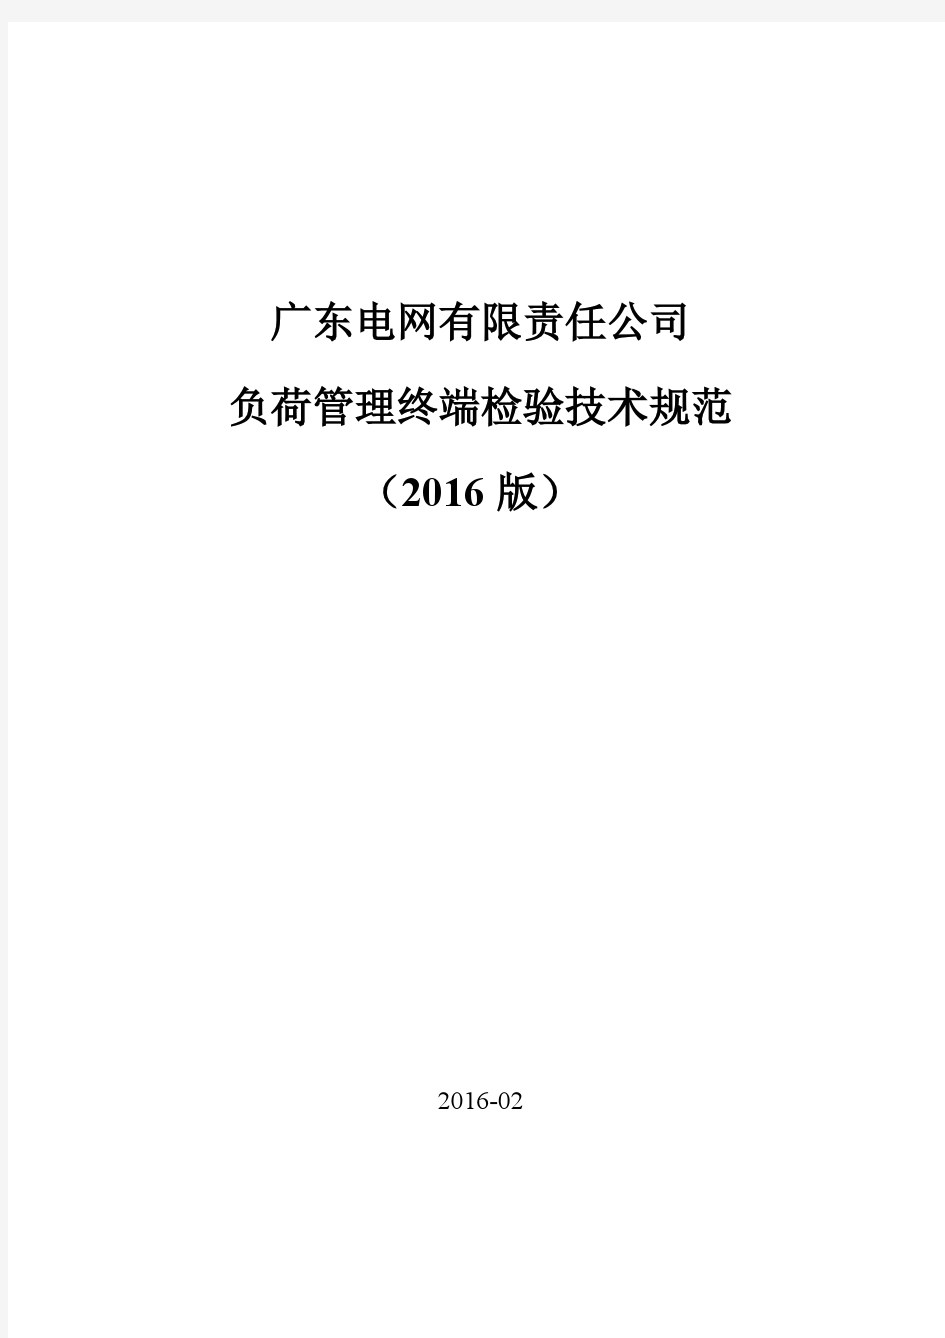 广东电网有限责任公司负荷管理终端检验技术规范(2016版)